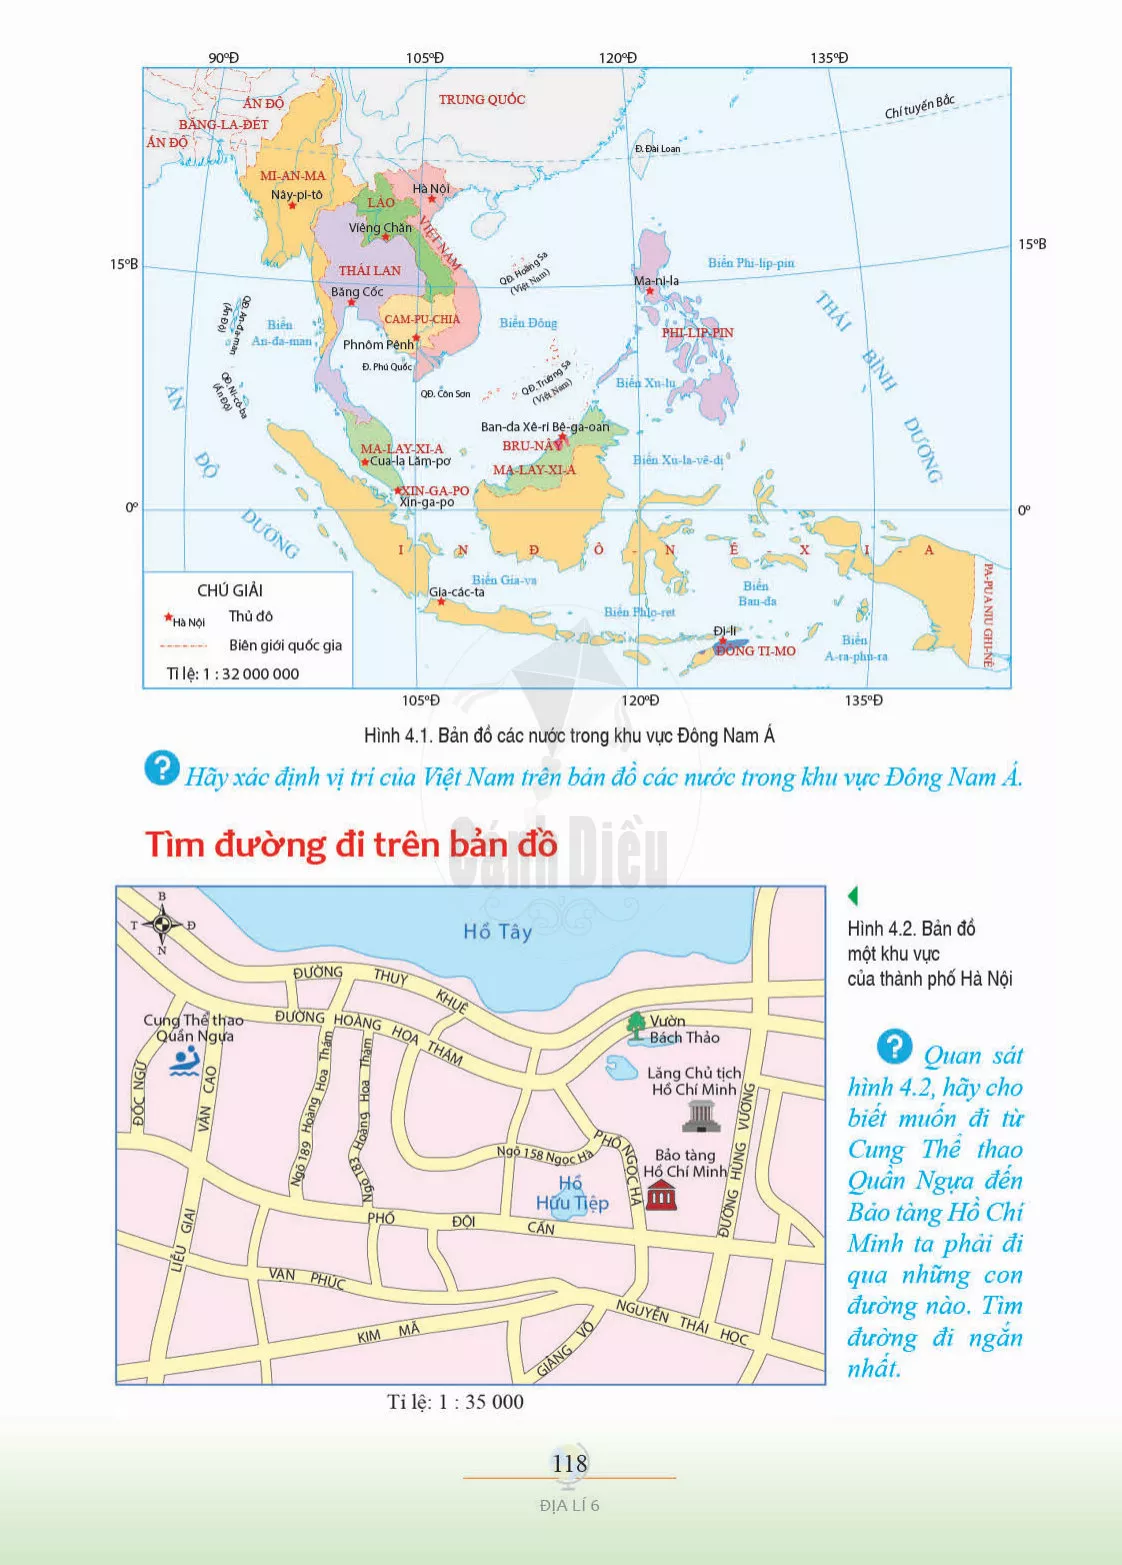 Bài 4. Thực hành: Đọc bản đồ. Xác định vị trí của đối tượng địa lí trên bản đồ. Tìm đường đi trên bản đồ